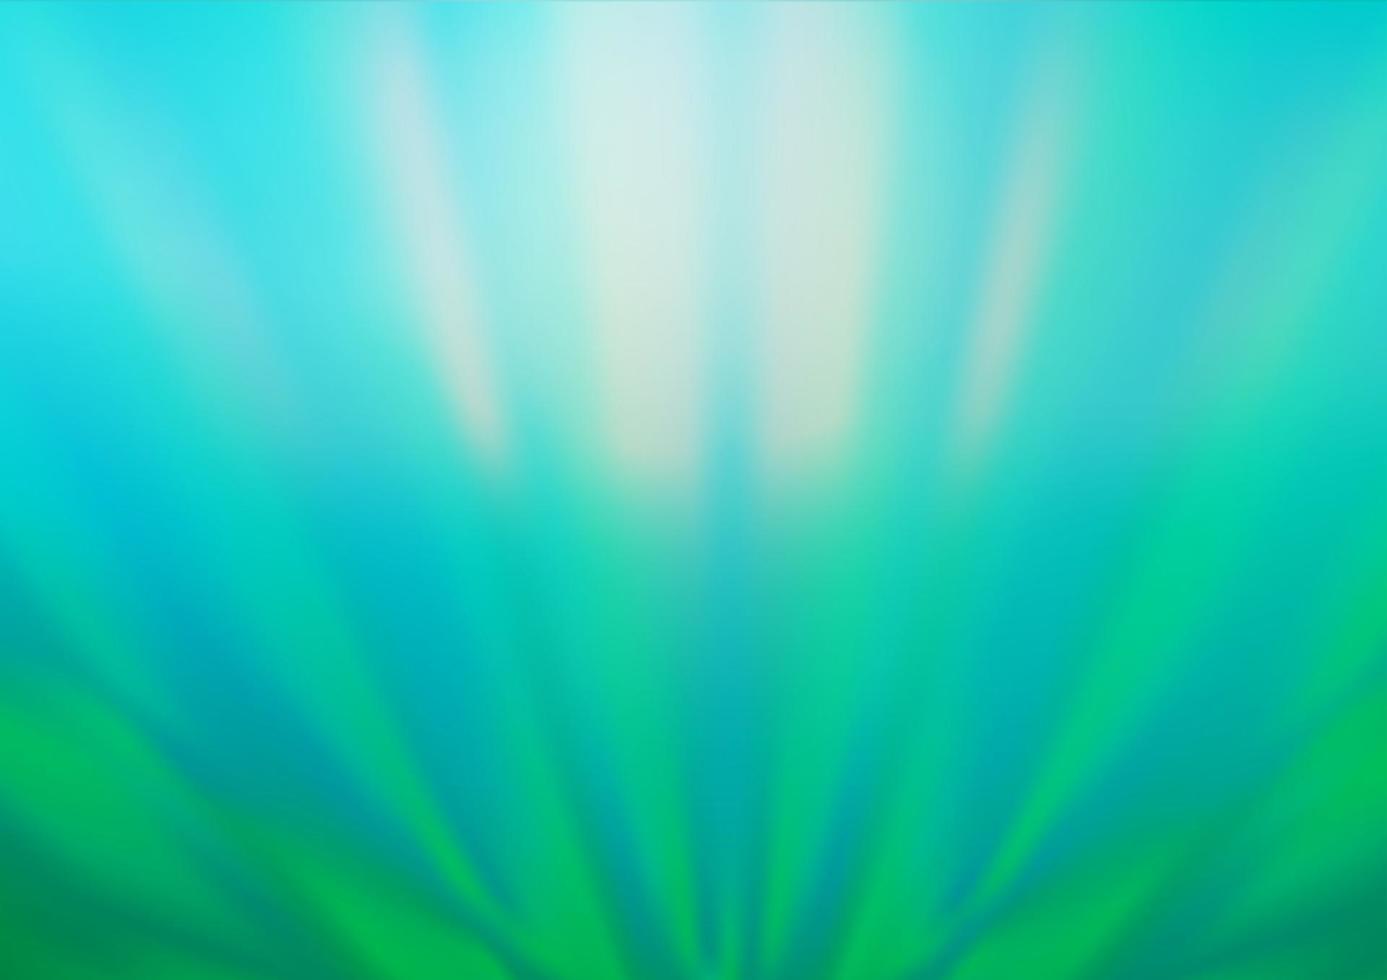 ljusblå, grön vektor suddig glans abstrakt bakgrund.